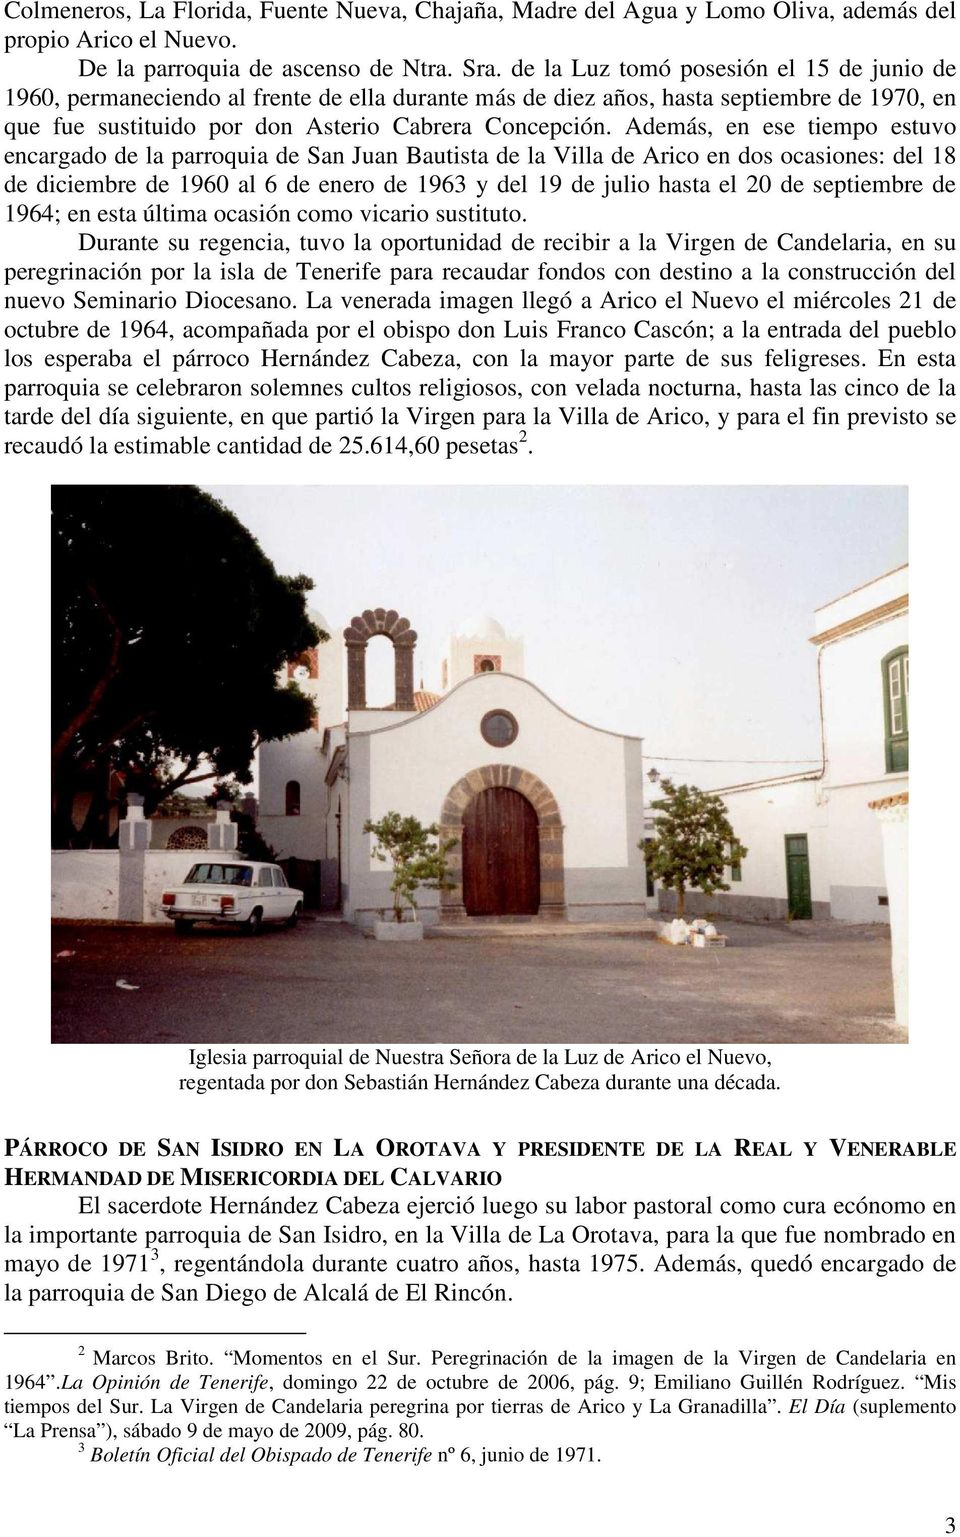 Además, en ese tiempo estuvo encargado de la parroquia de San Juan Bautista de la Villa de Arico en dos ocasiones: del 18 de diciembre de 1960 al 6 de enero de 1963 y del 19 de julio hasta el 20 de